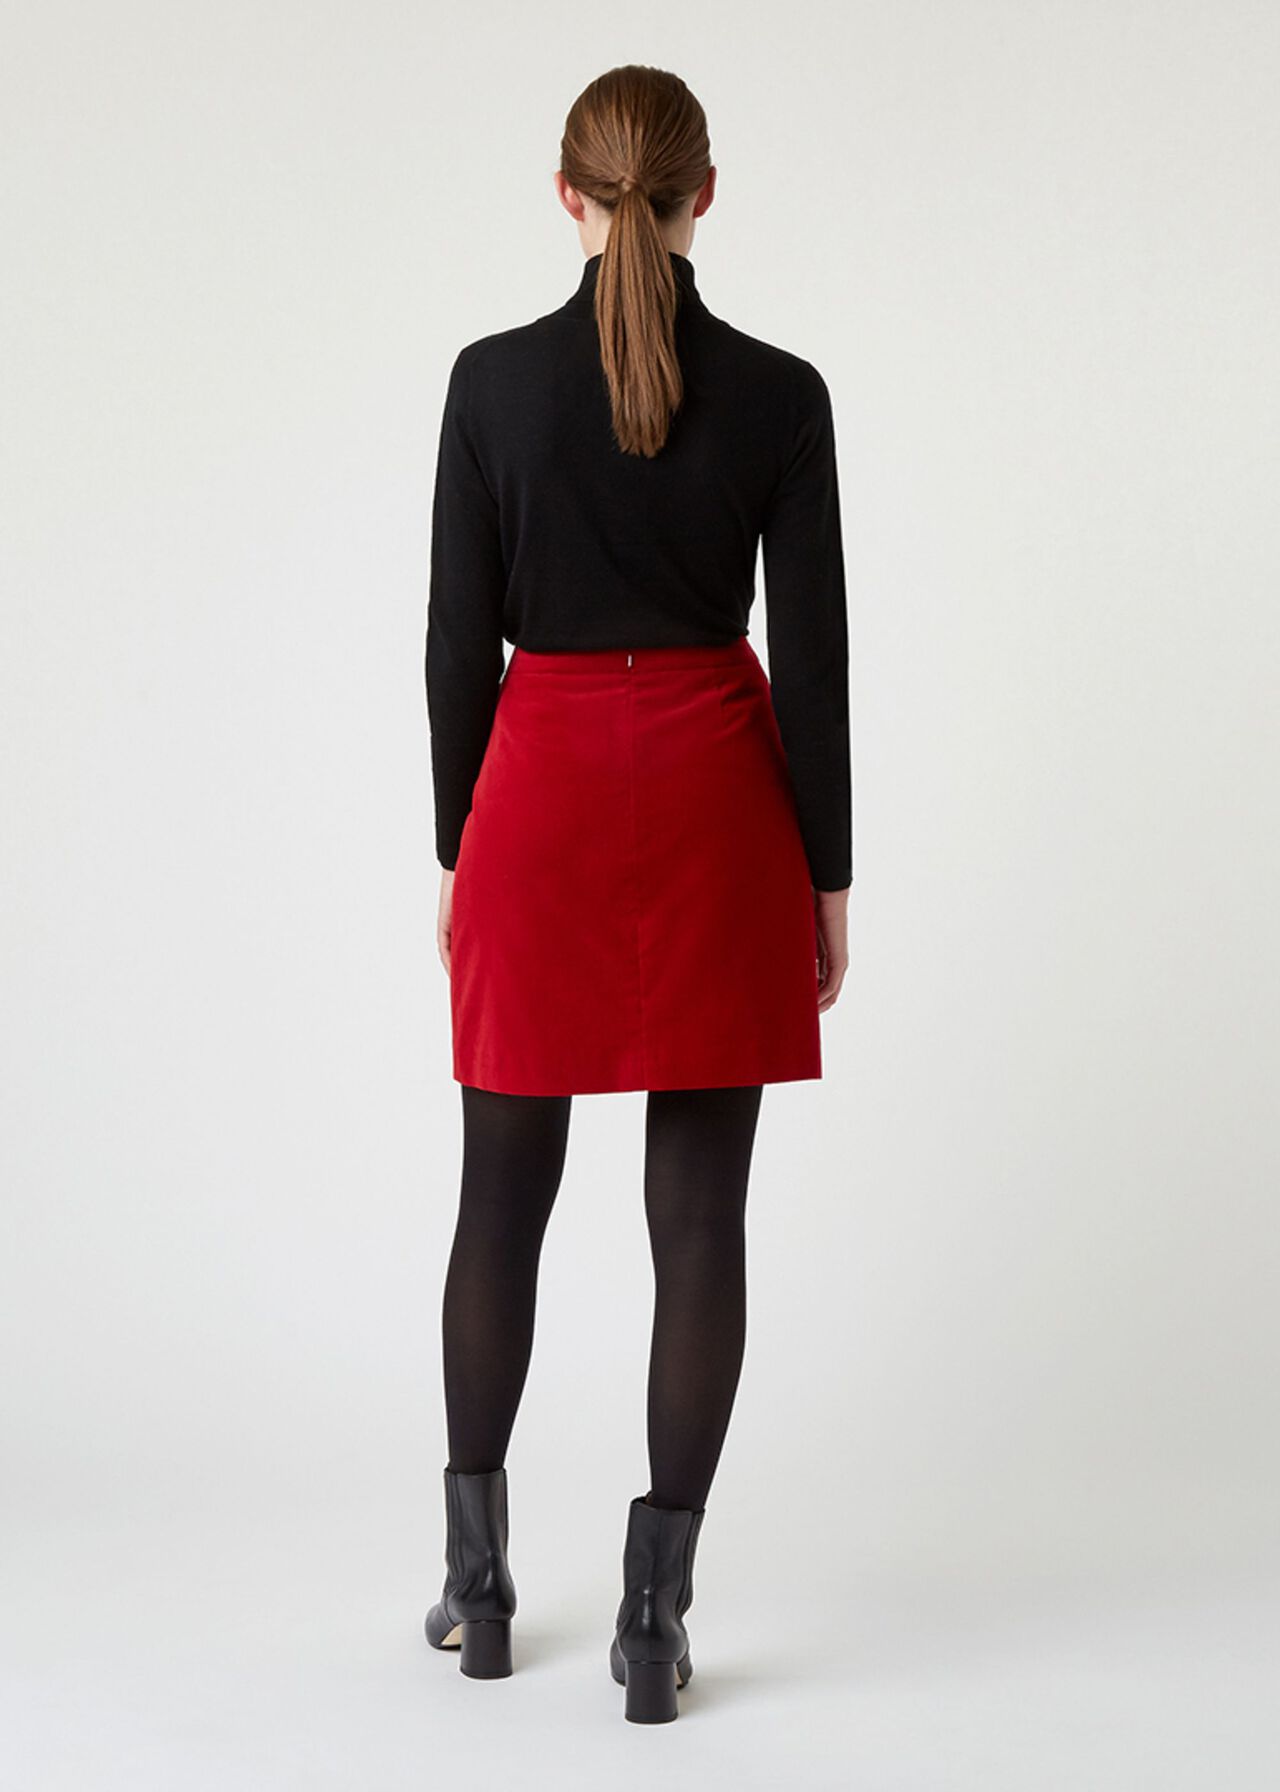 Vanetta Skirt, Red, hi-res